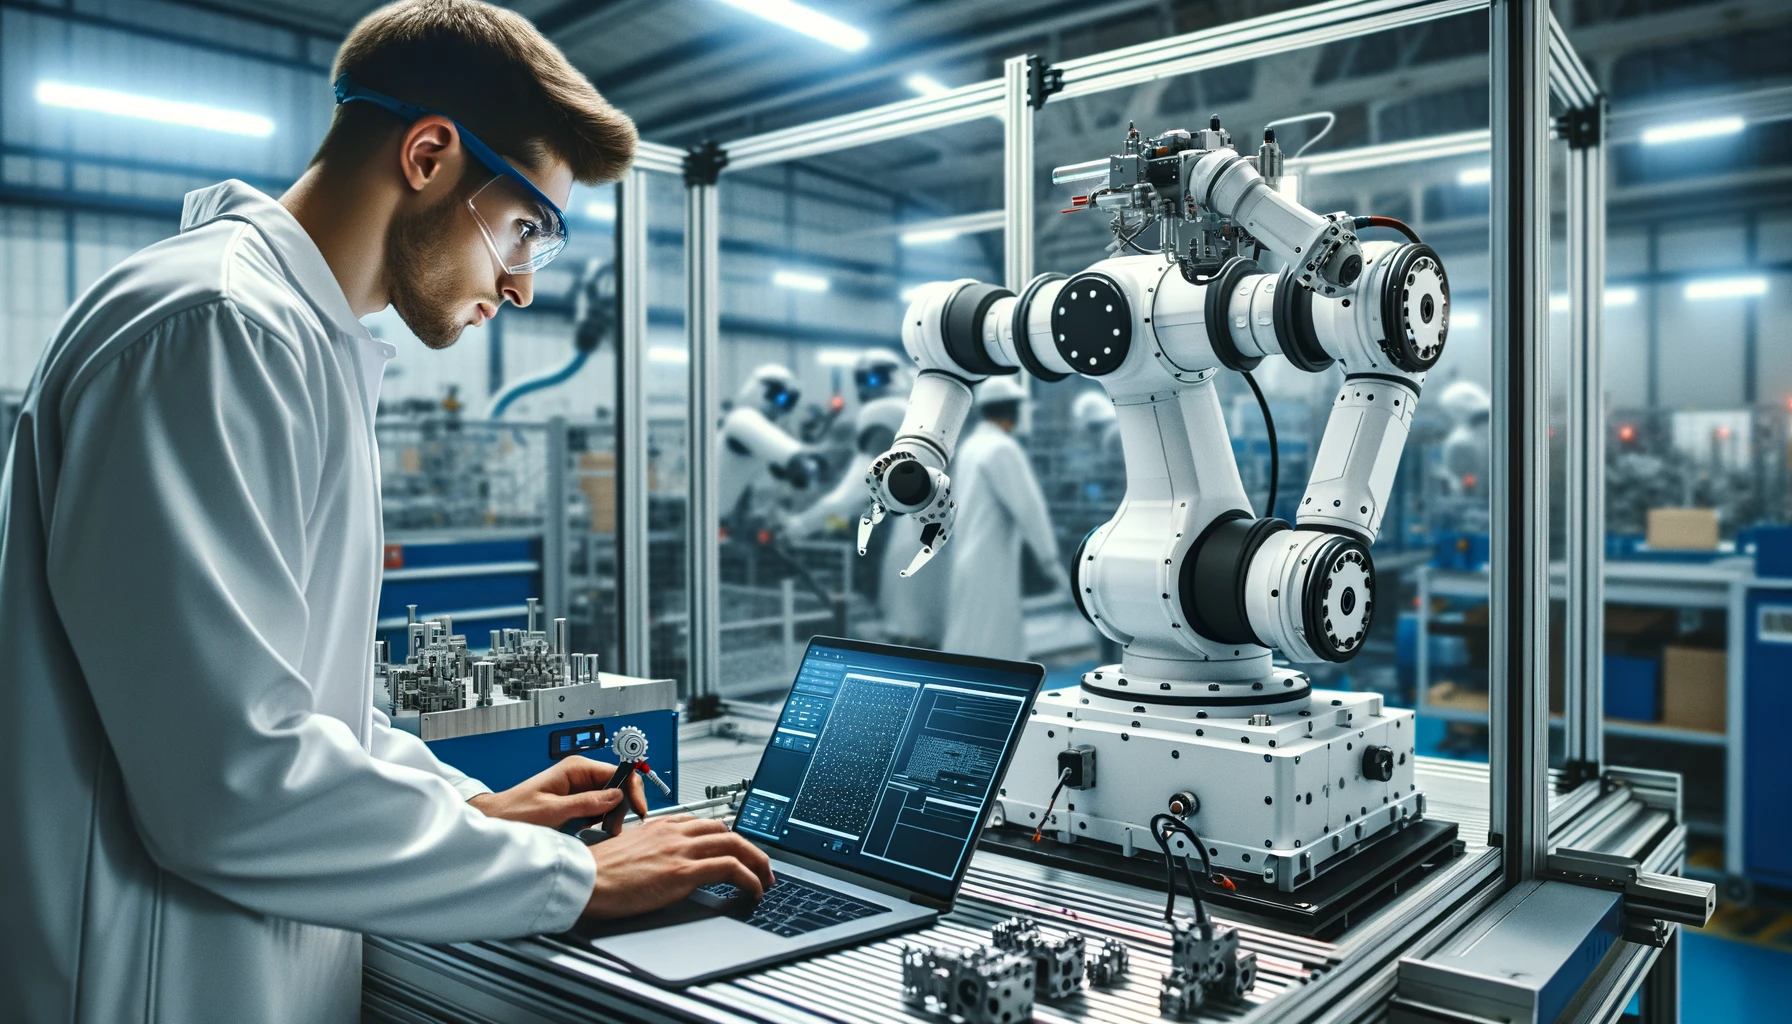 Techniker bzw. Roboterprogrammierer programmiert einen ABB Industrieroboter, fokussiert auf einen Laptop in einer modernen, technologisch fortschrittlichen Produktionsumgebung.